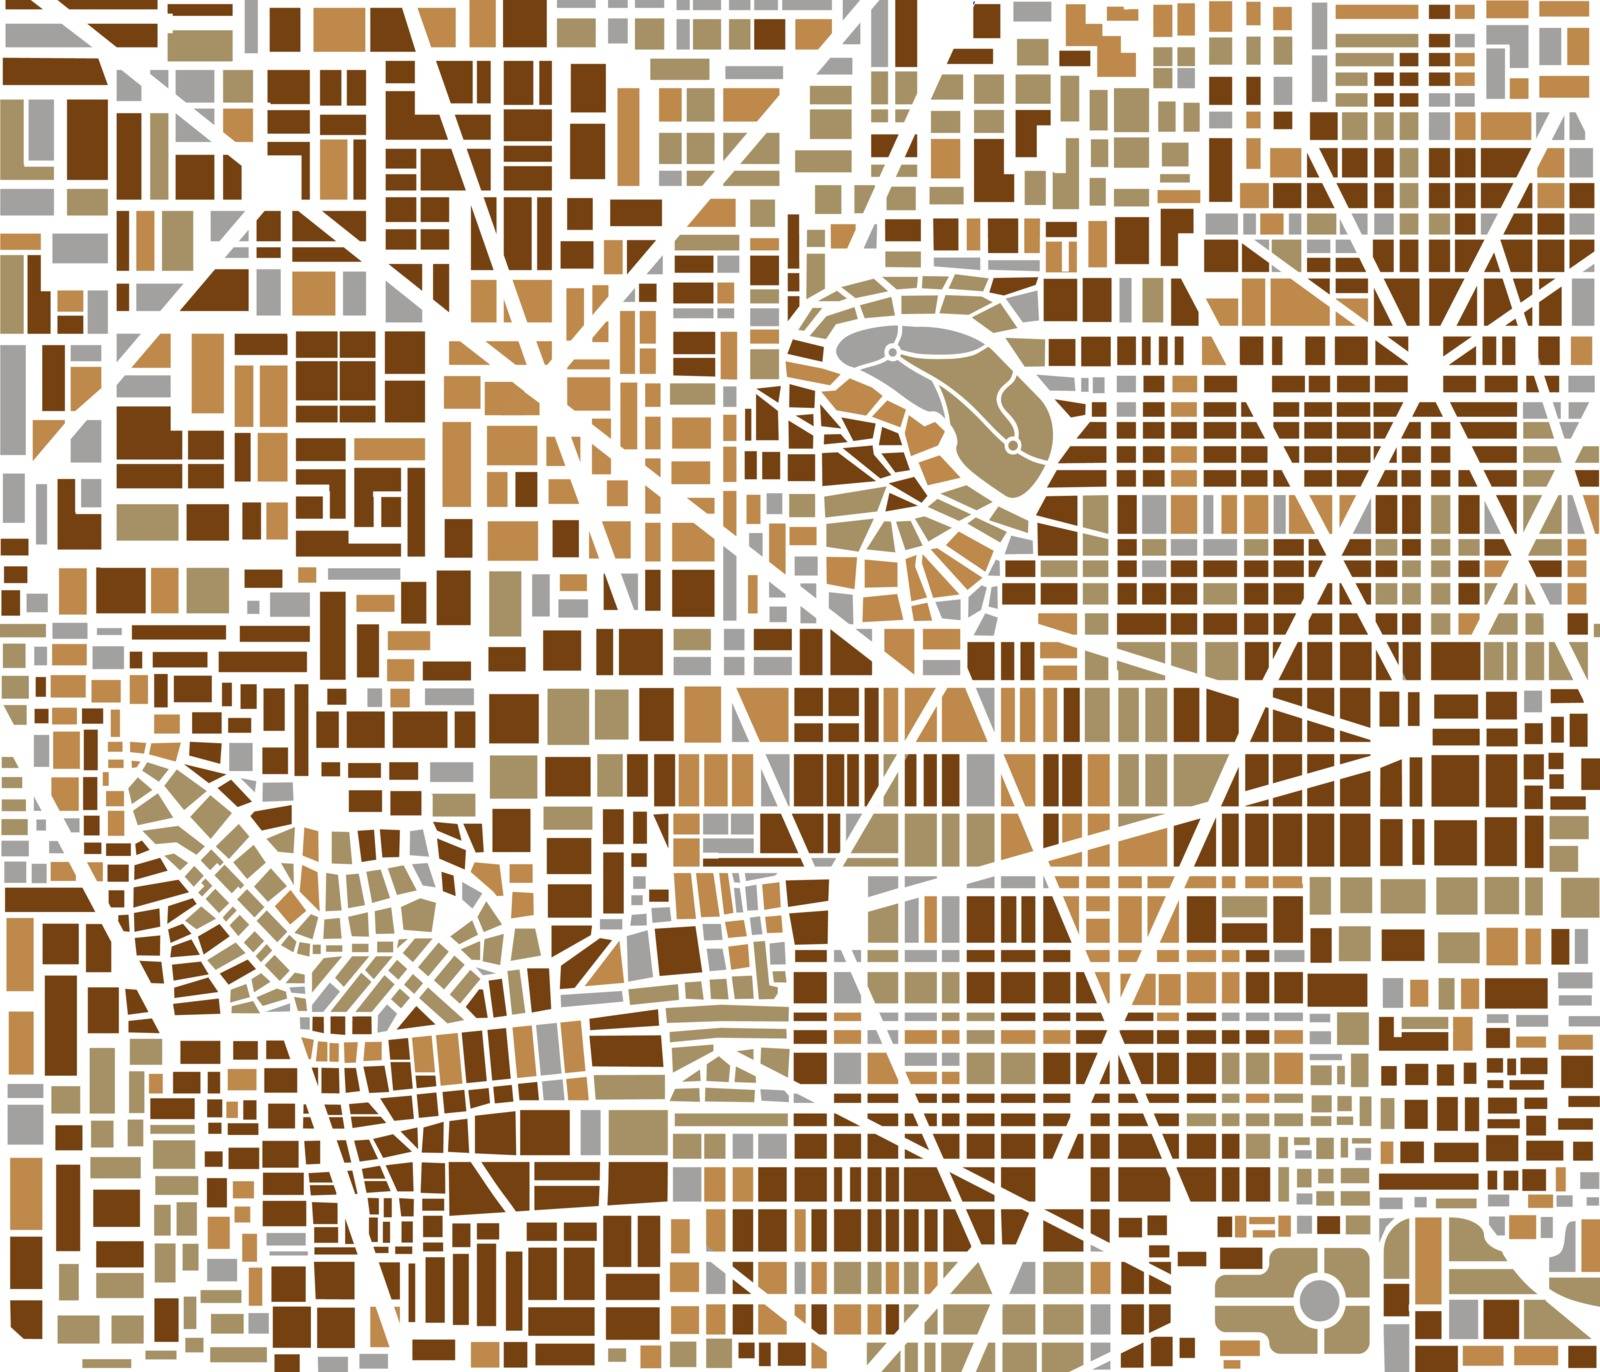 Background city map by Alexzel